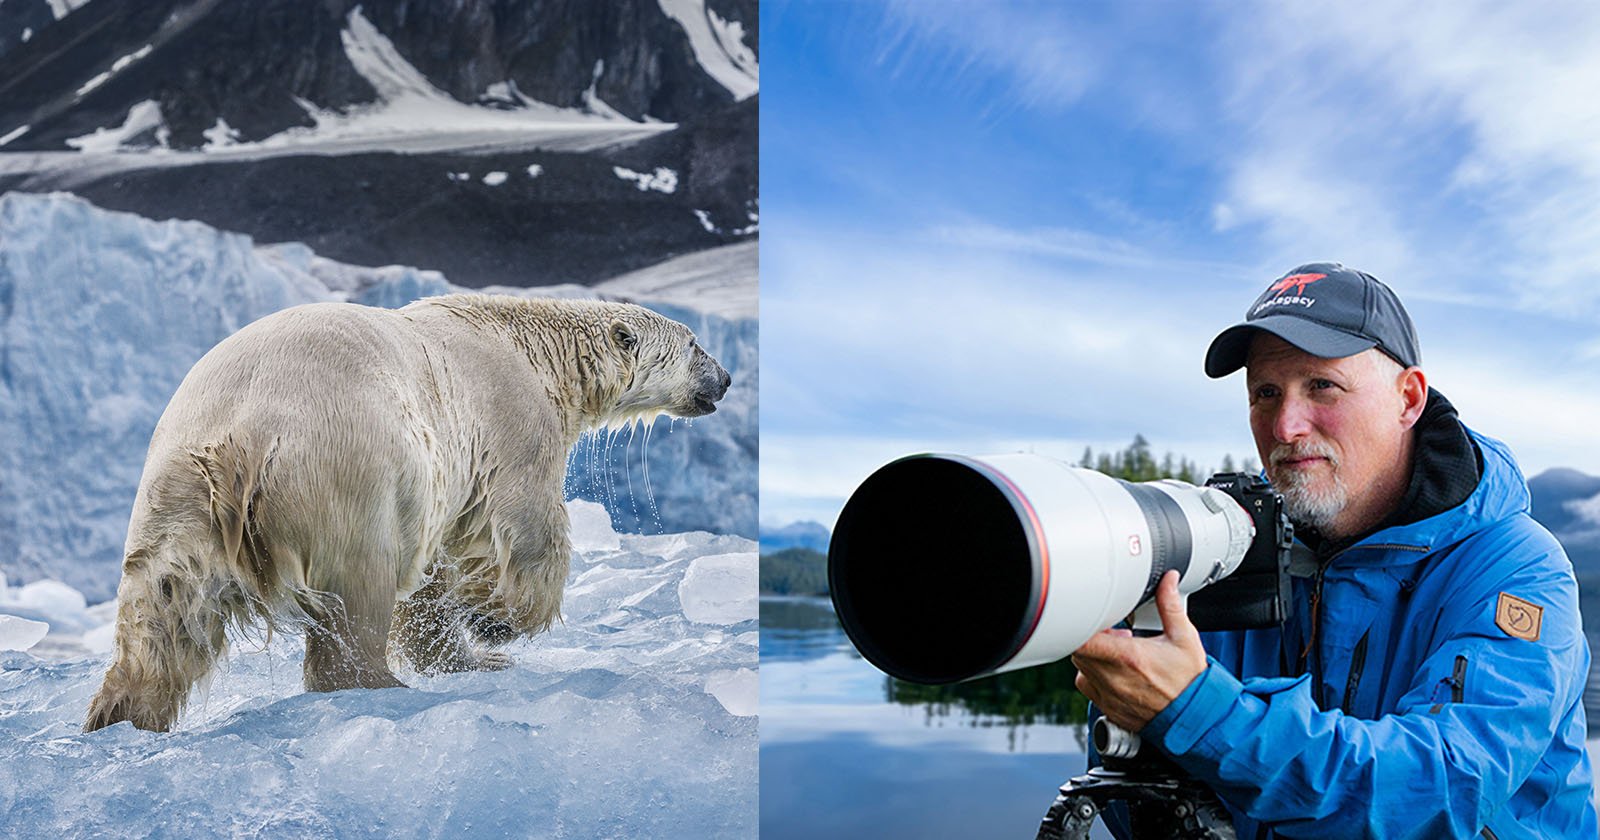 Paul Nicklen: Utilizing Images for Conservation